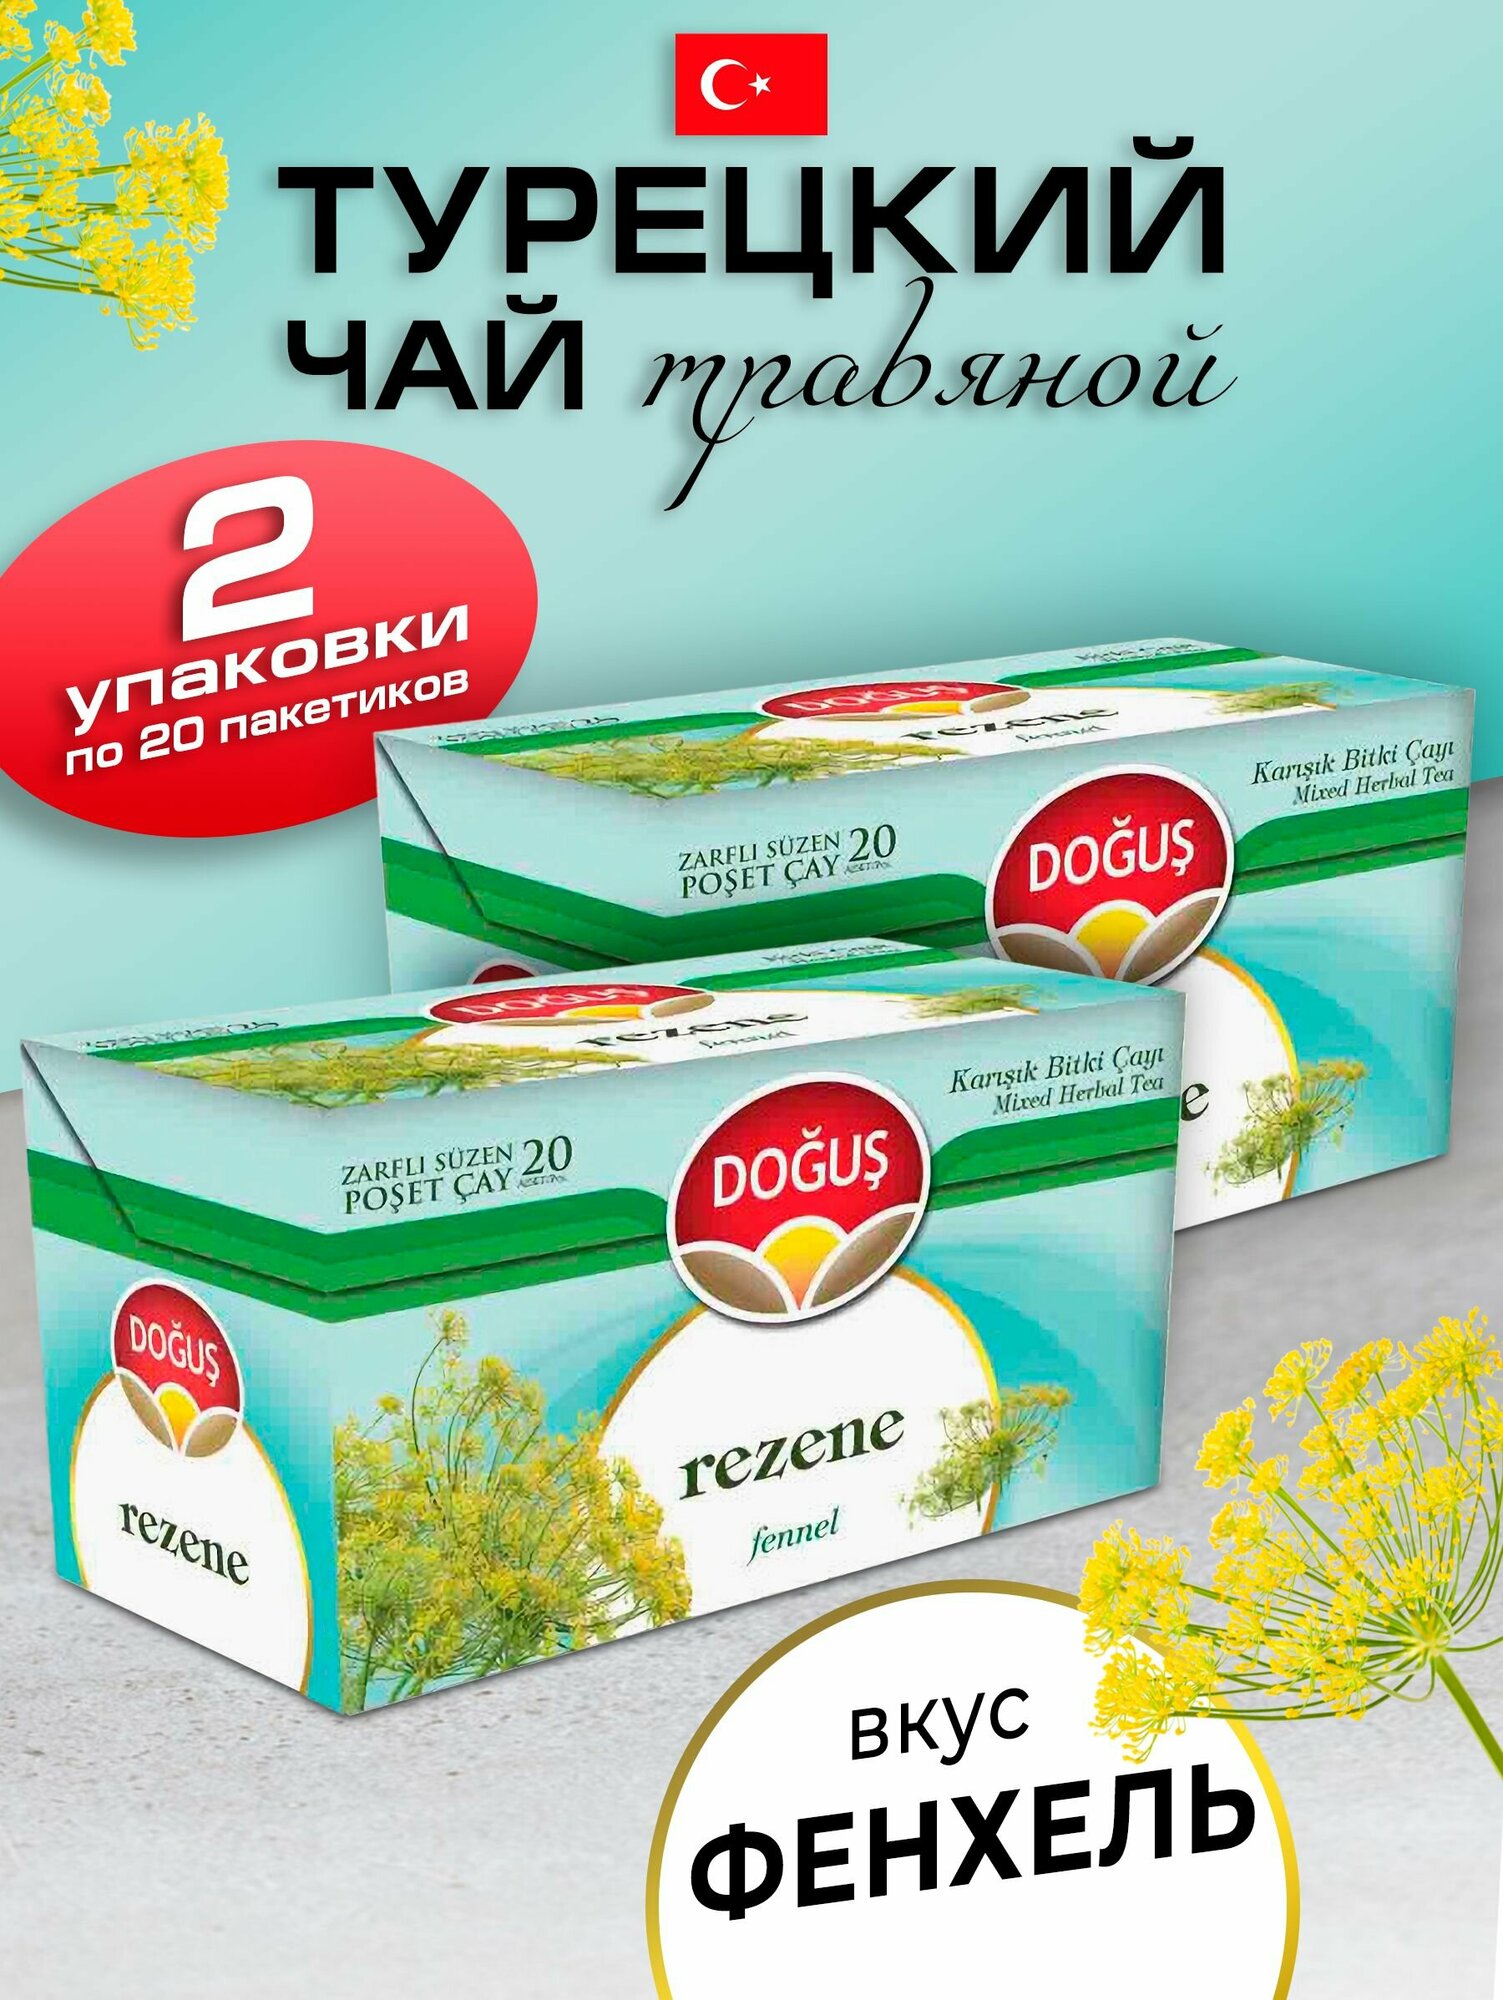 Турецкий травяной чай с фенхелем 2 упаковки по 20 пакетиков